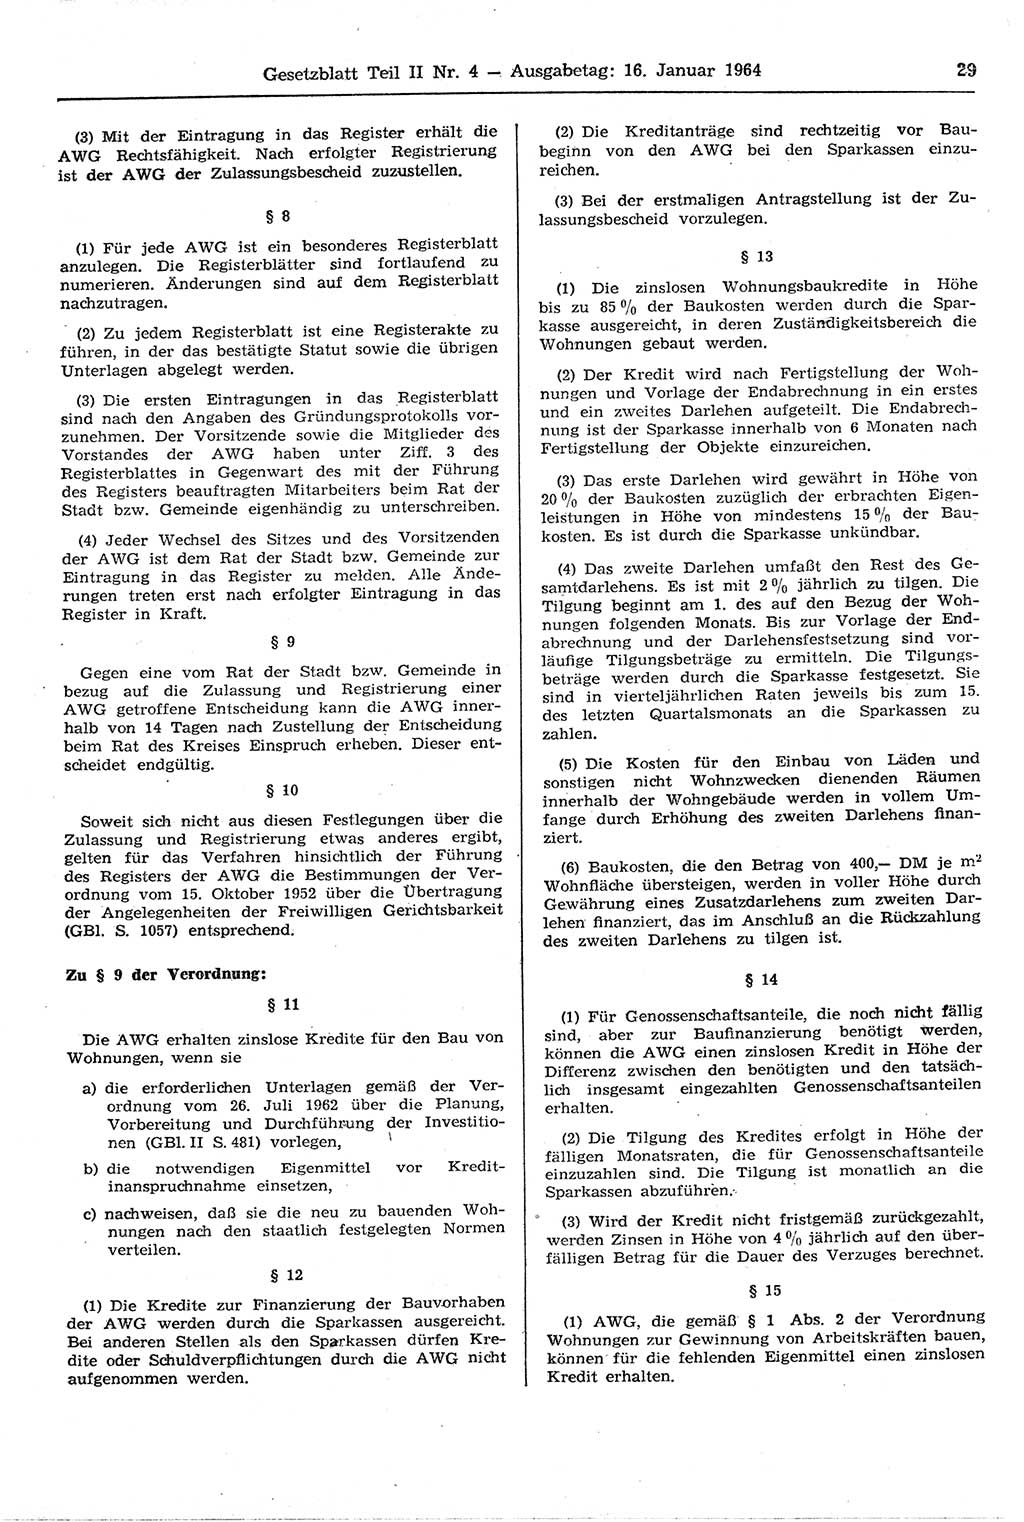 Gesetzblatt (GBl.) der Deutschen Demokratischen Republik (DDR) Teil ⅠⅠ 1964, Seite 29 (GBl. DDR ⅠⅠ 1964, S. 29)